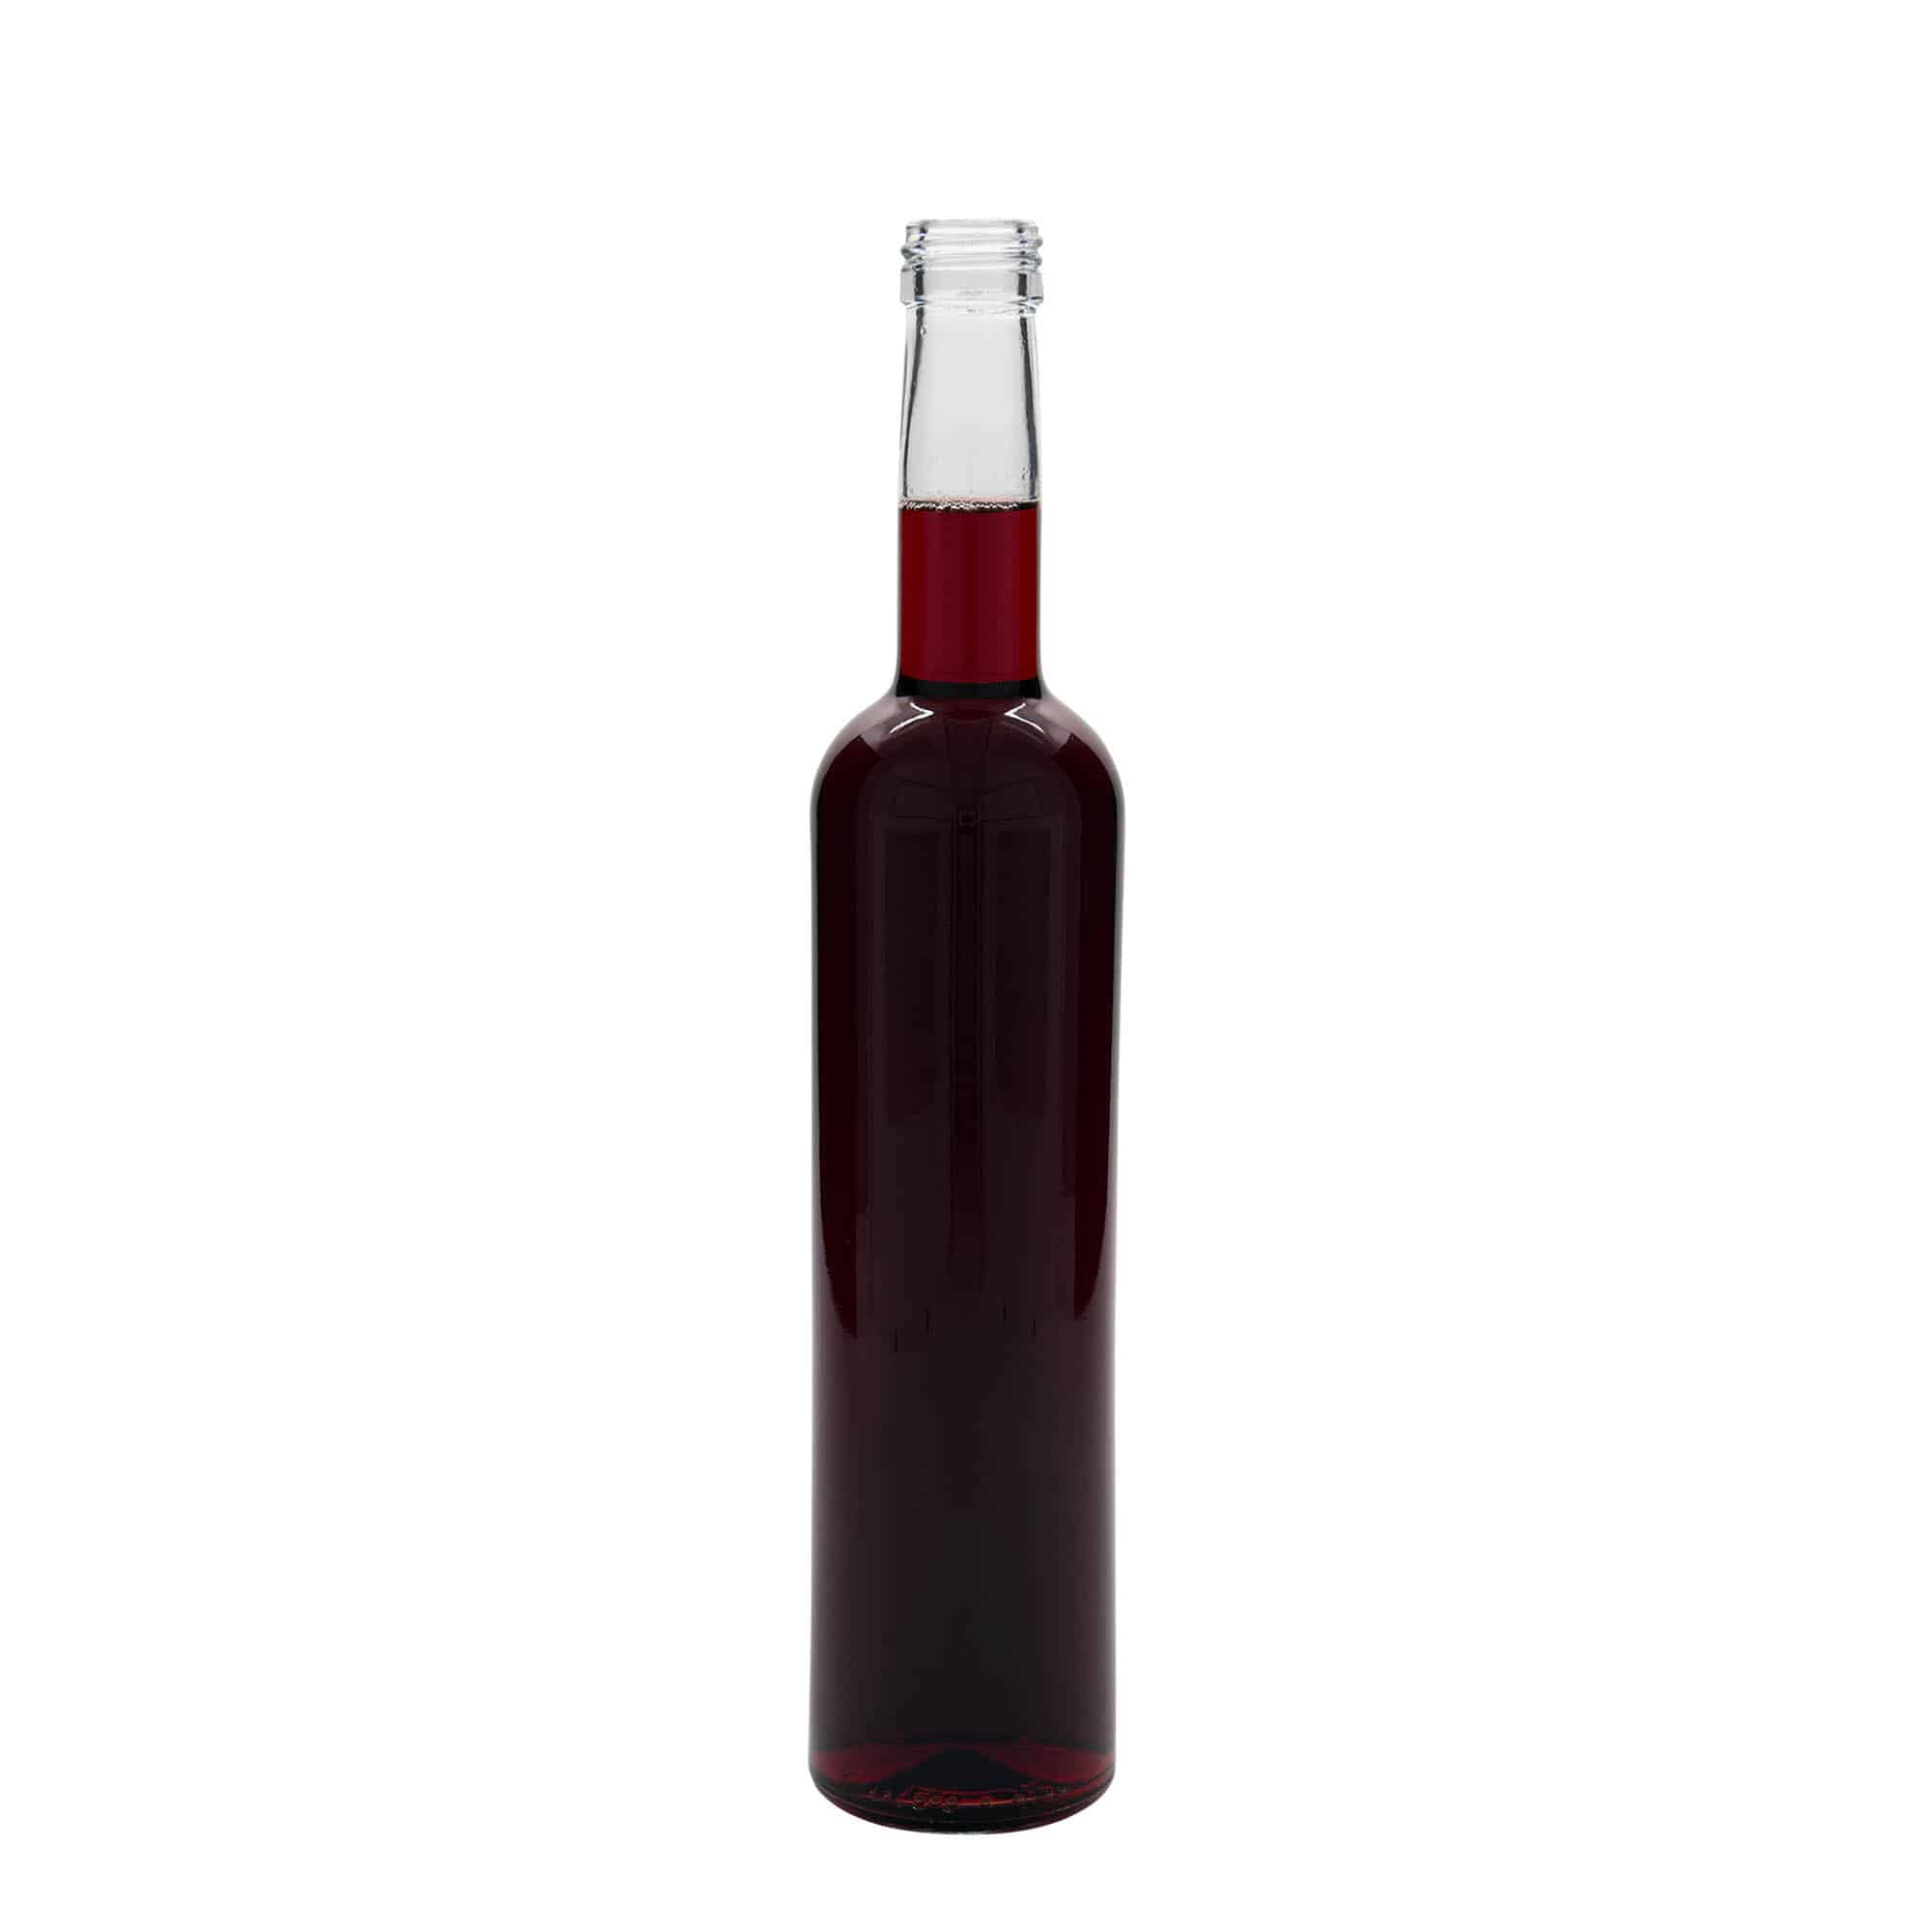 500 ml glass bottle 'Bordeaux', closure: PP 28